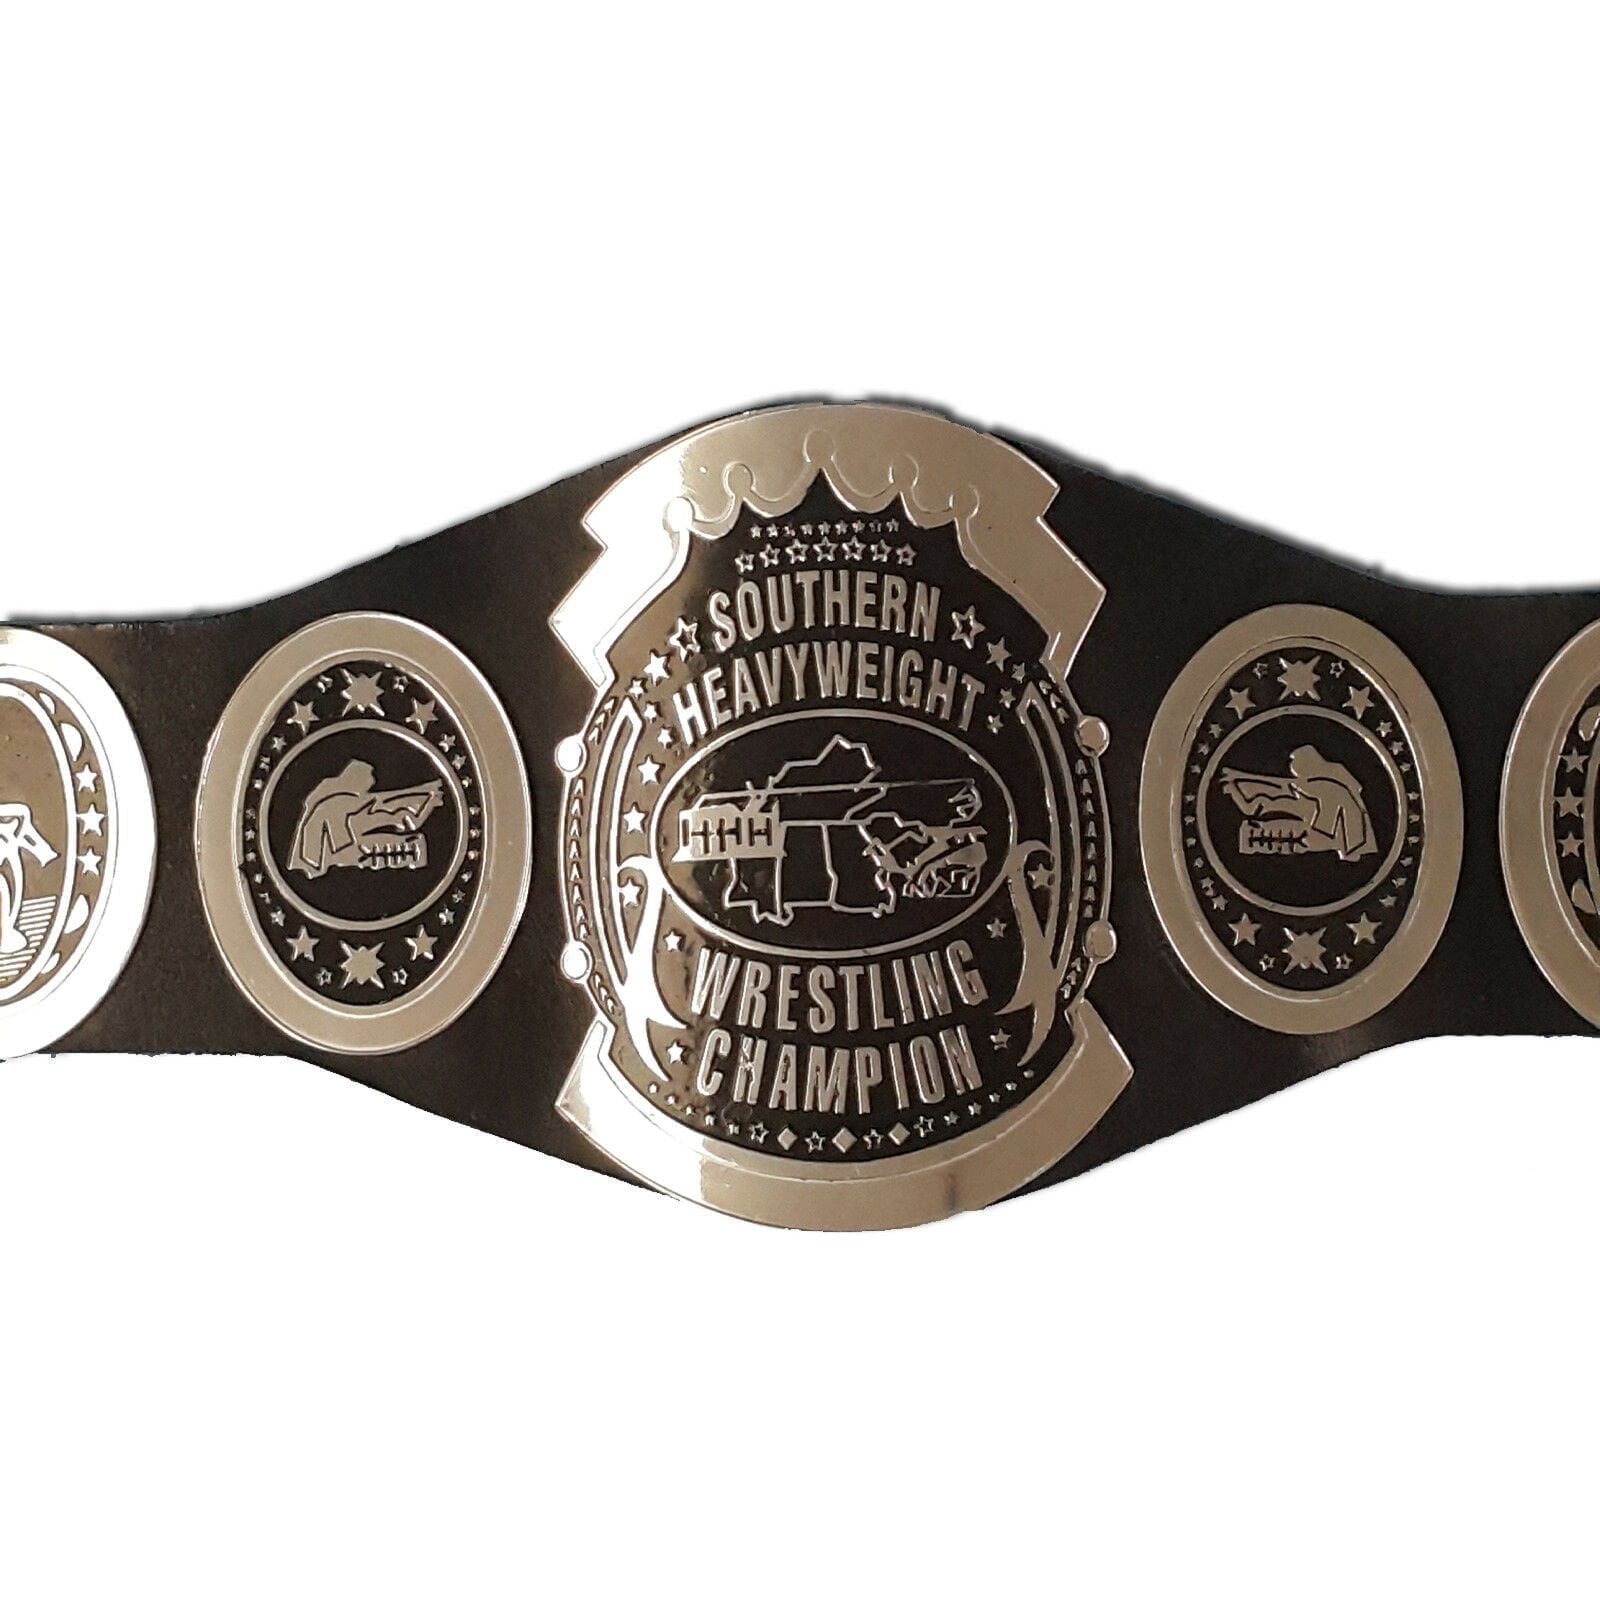 Awa Southern Heavyweight Wrestling Championship Belt Replica